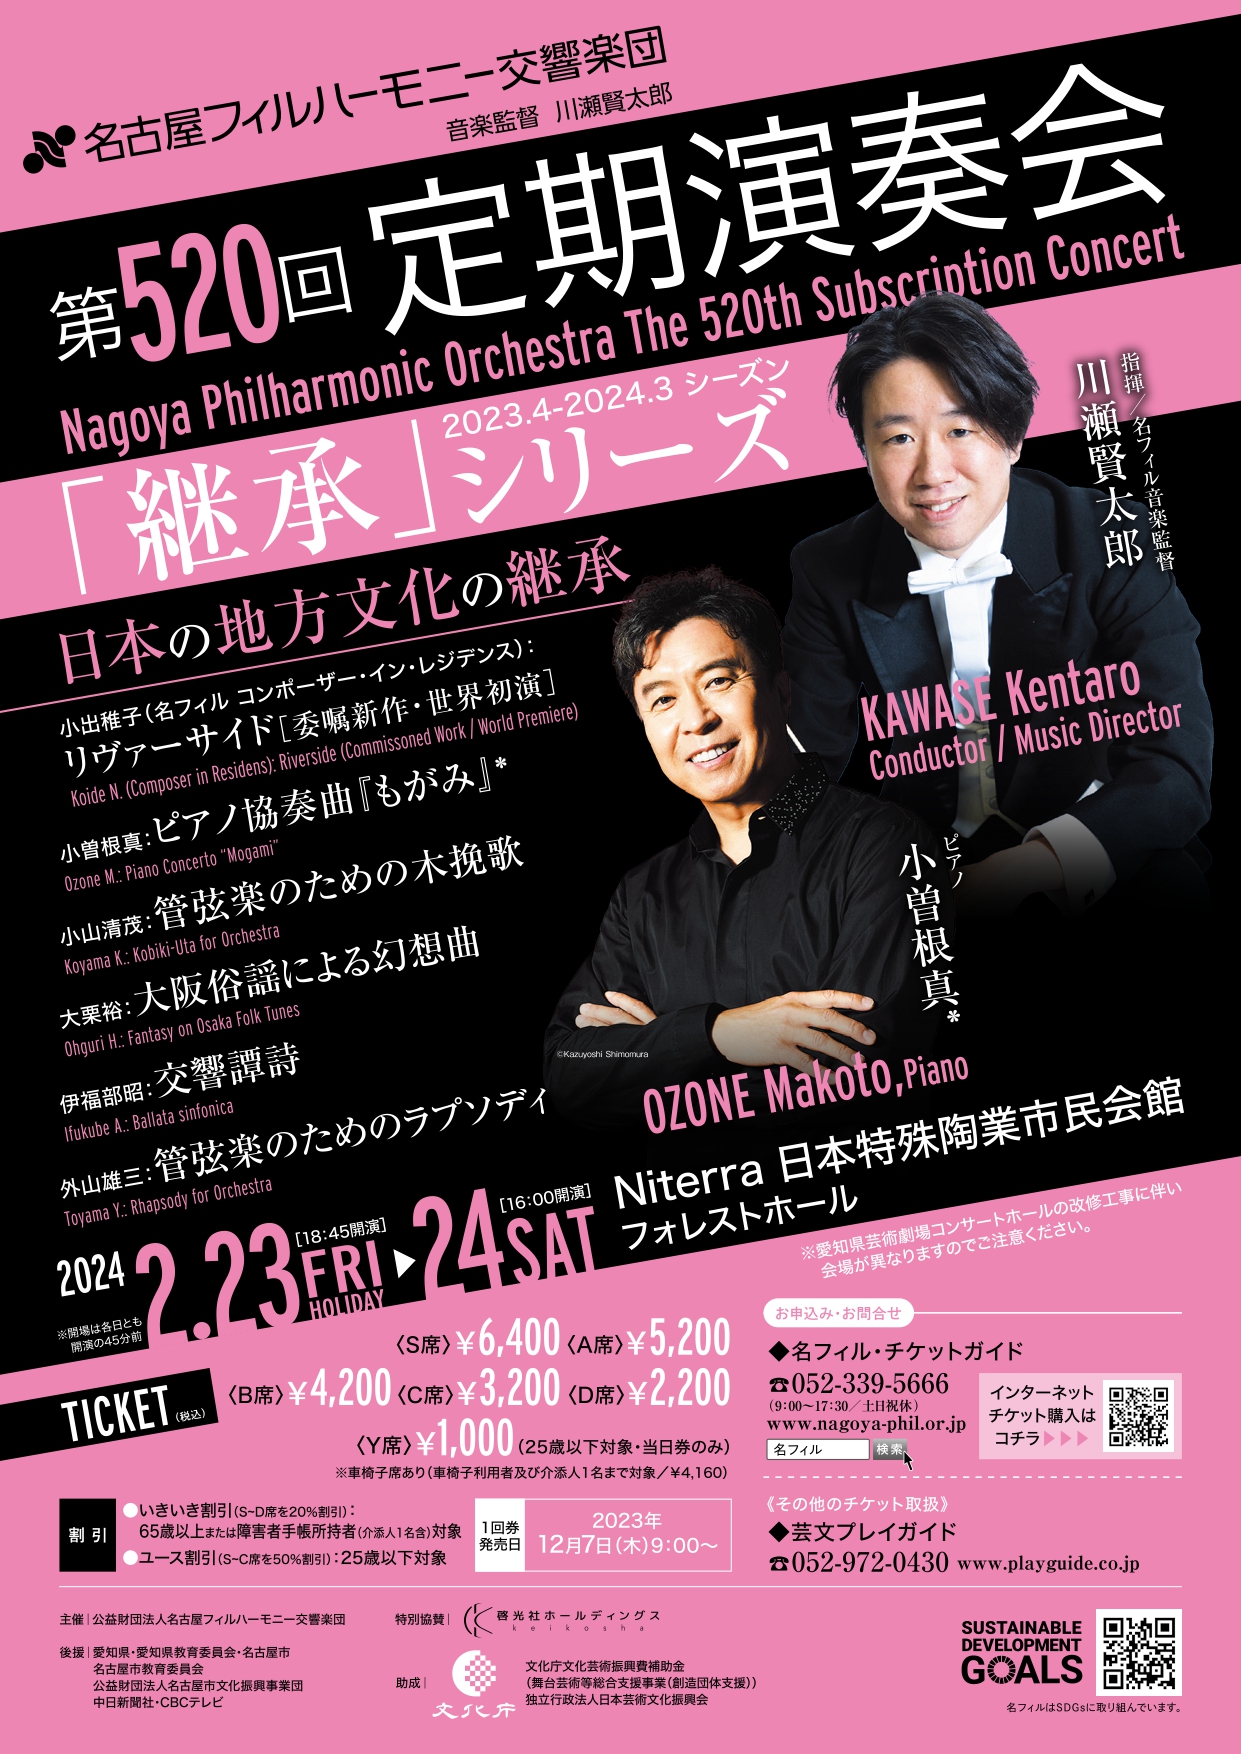 名古屋フィルハーモニー交響楽団 第520回定期演奏会〈日本の地方文化の継承〉